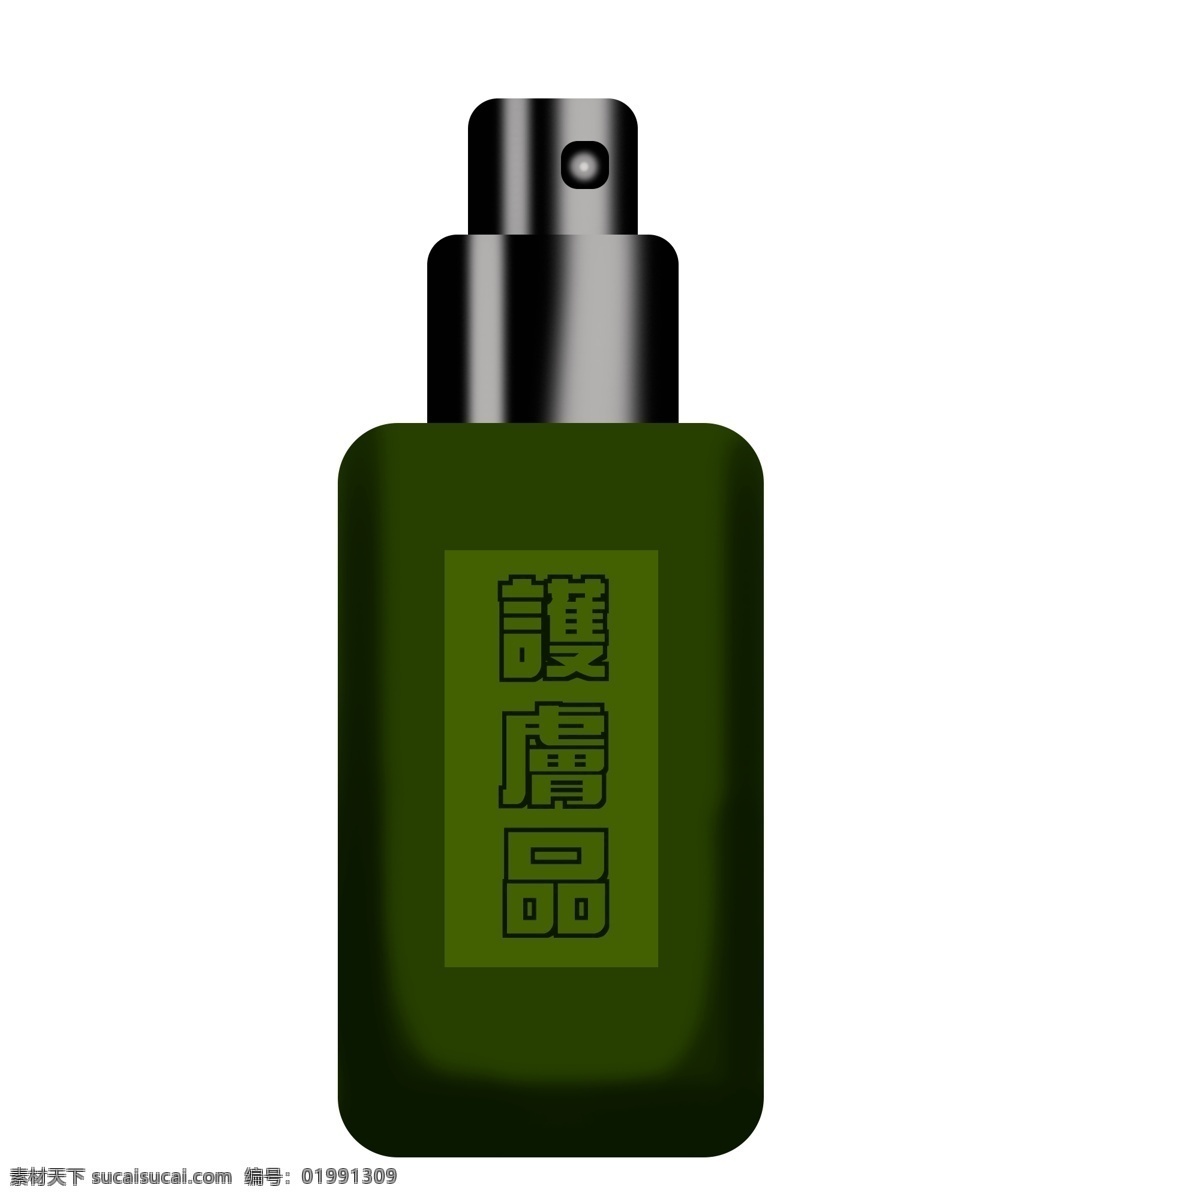 绿色 简约 护肤品 瓶子 插画 卡通 手绘 美妆元素